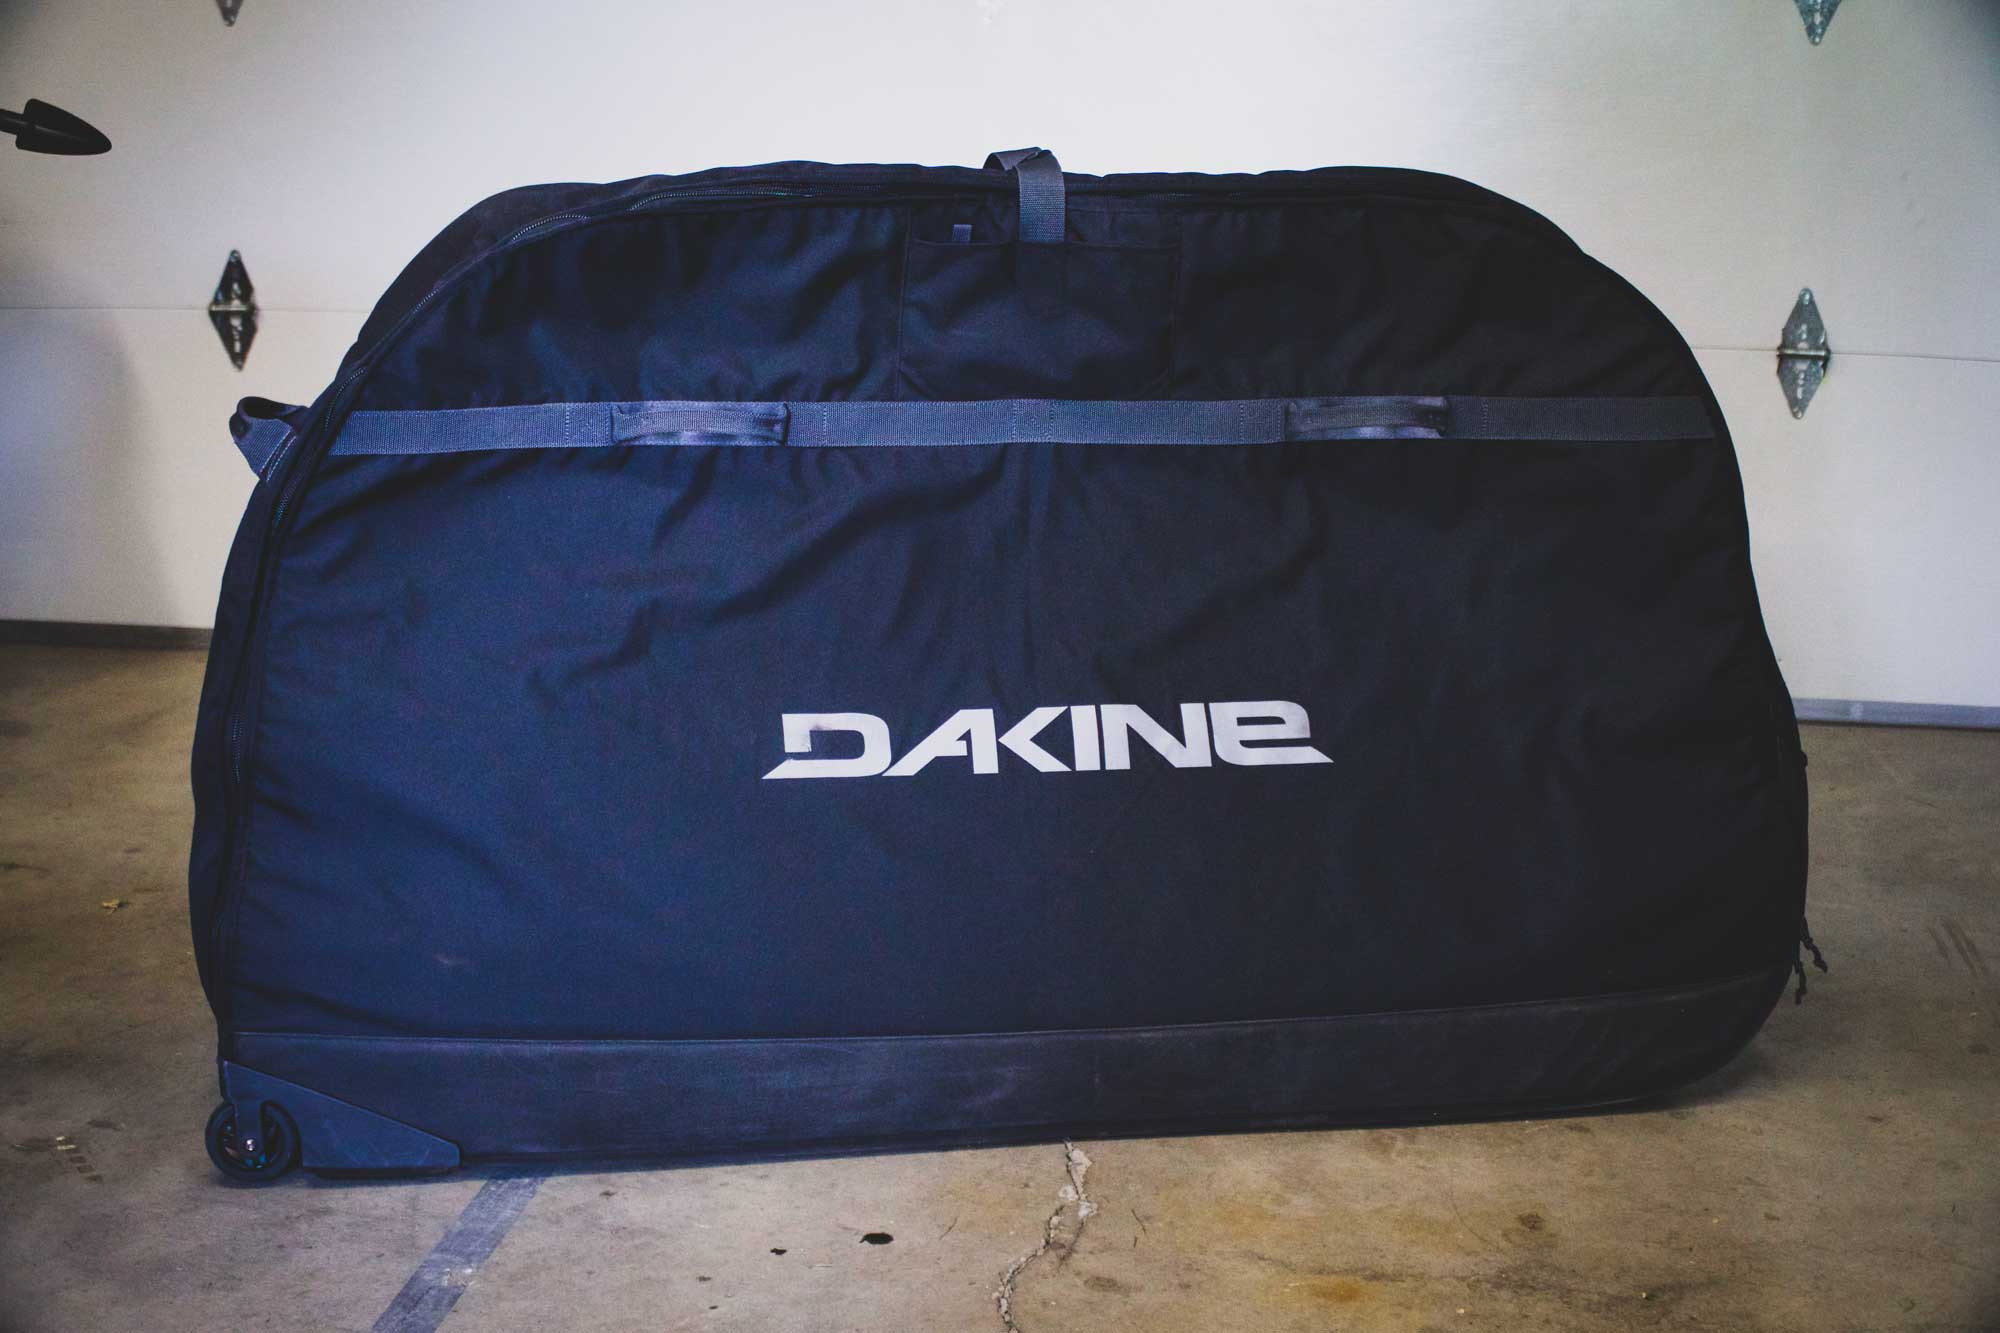 Review: Dakine Bike Roller Bag